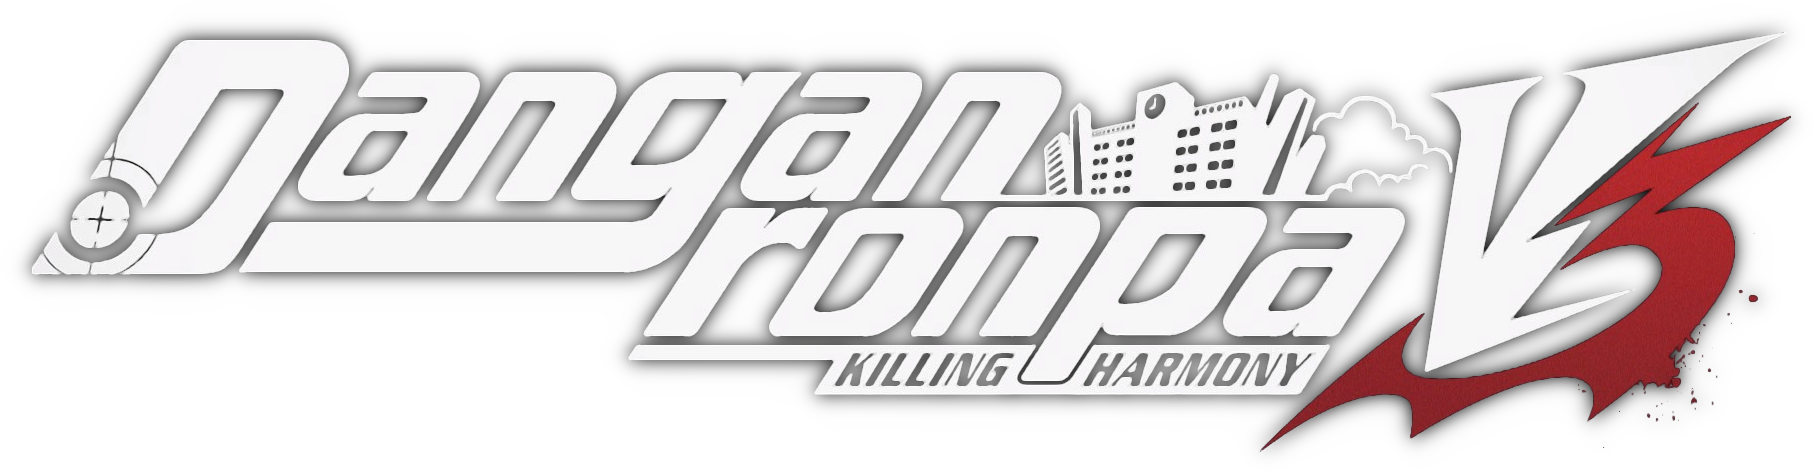 Danganronpa Logo PNG Image Background